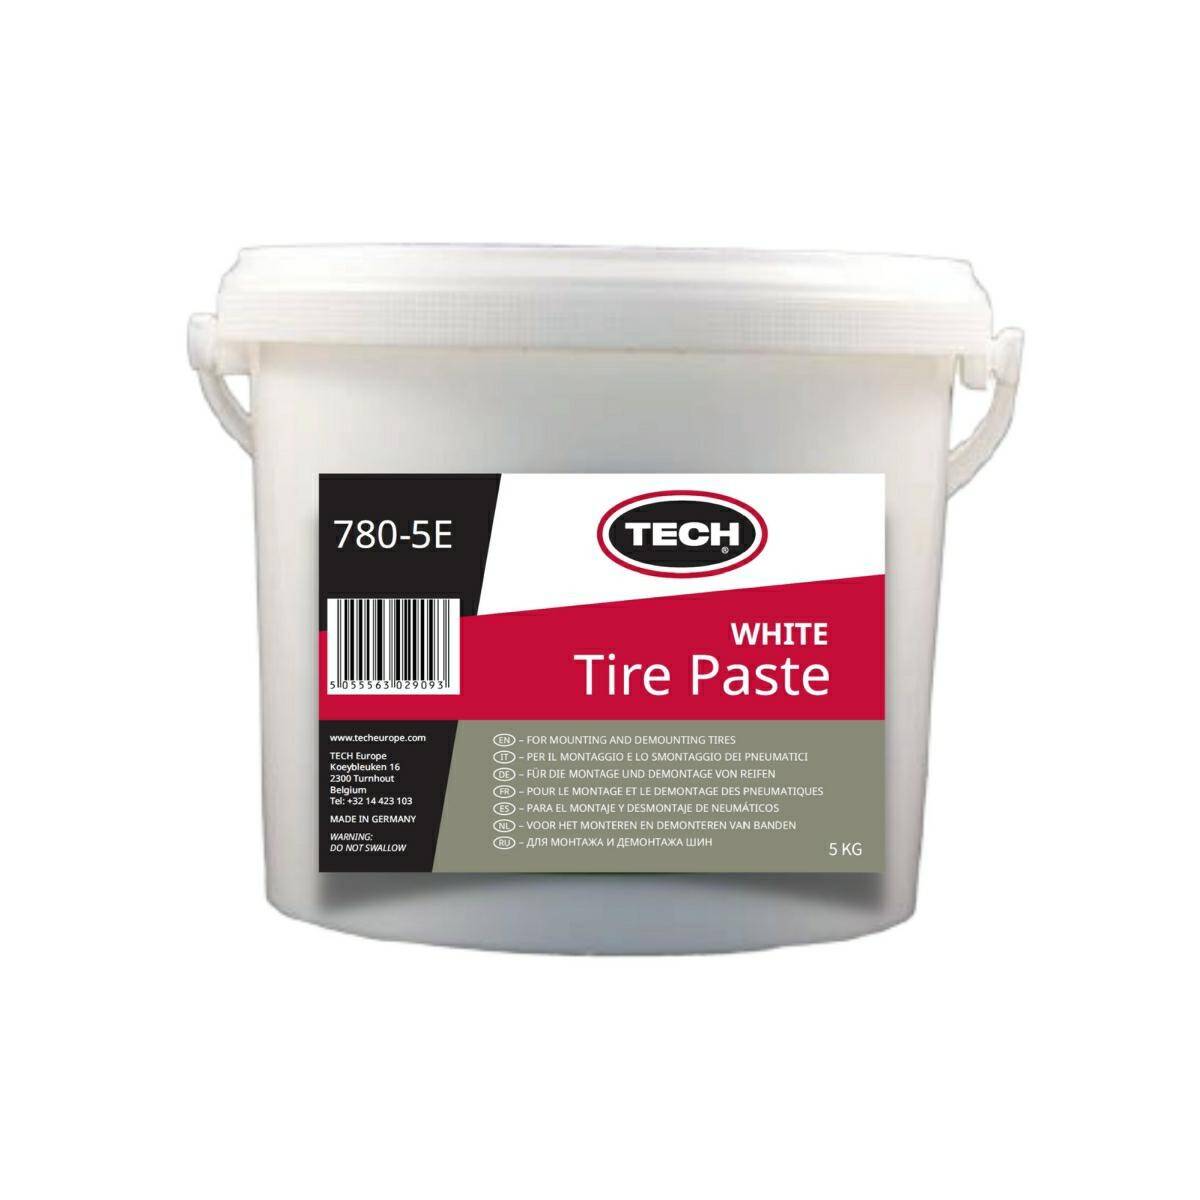 Tire mounting paste Tech STANDARD white 5kg (T-780-5E-STD)